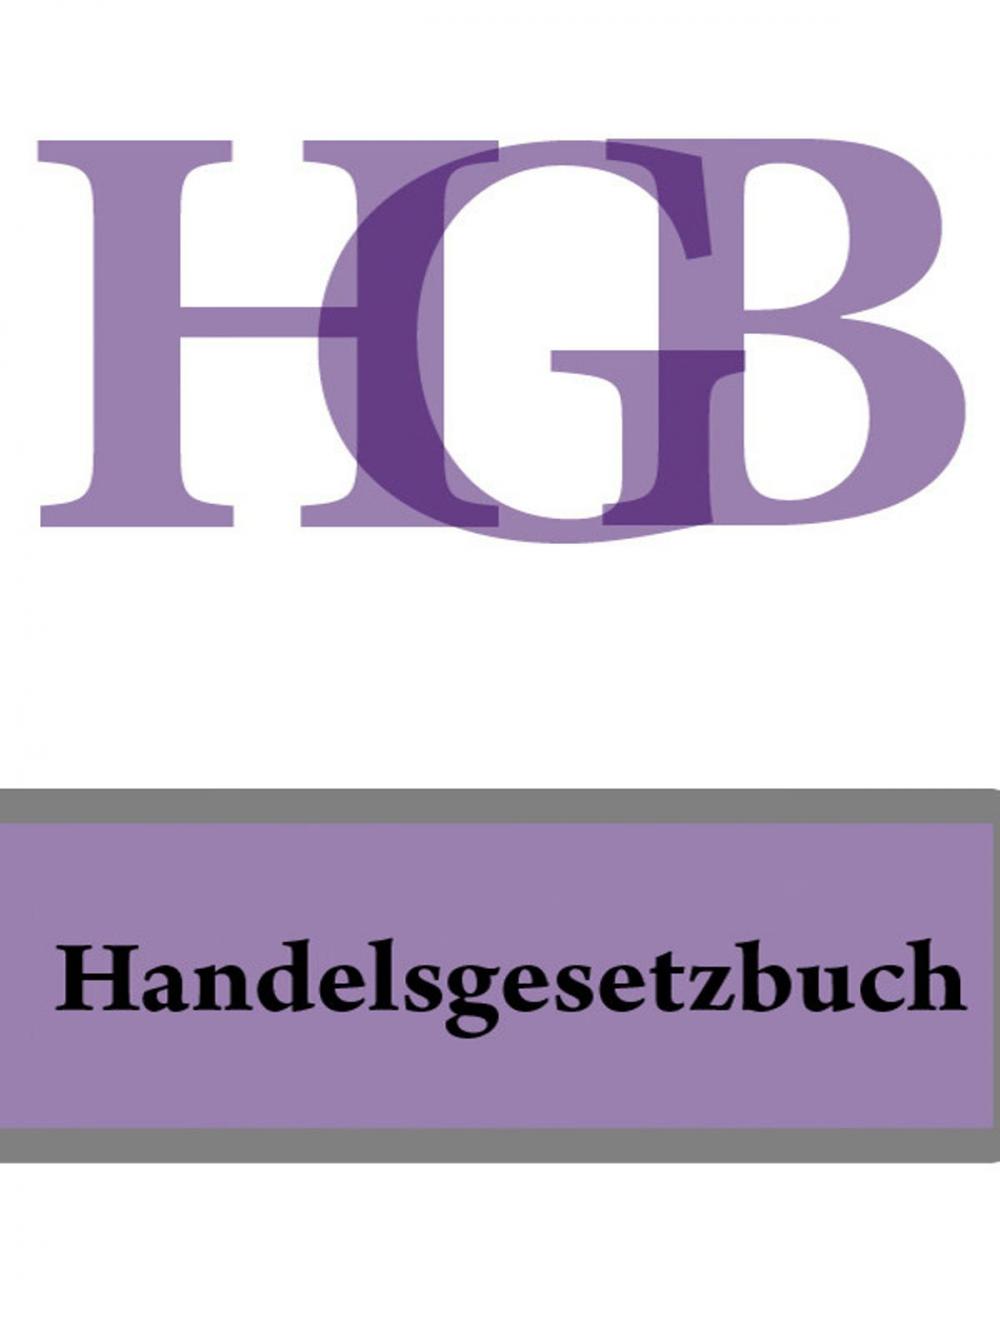 Big bigCover of Handelsgesetzbuch - HGB